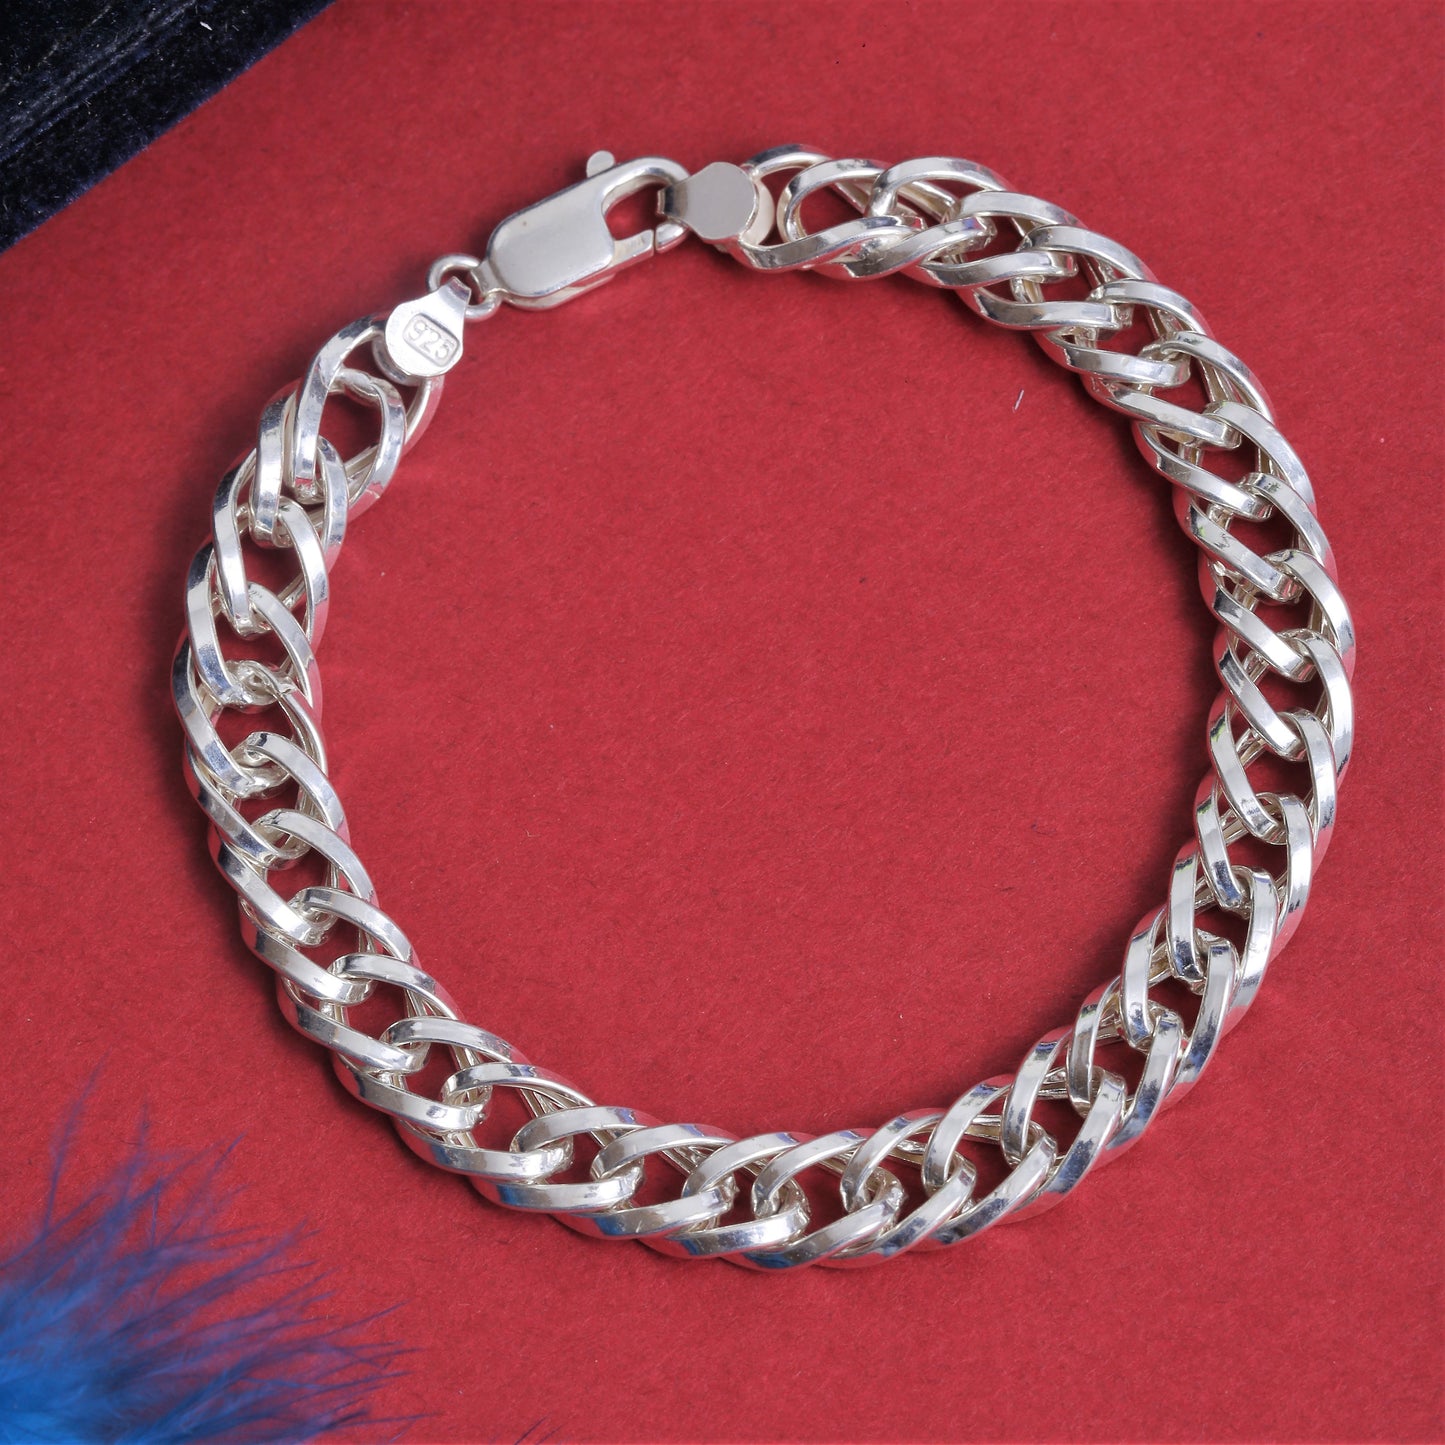 925 Sterling Silver Bracelet - Hollow Cuban Chain Bracelet - Length 8.5 Inches -Handmade Bracelet For Men